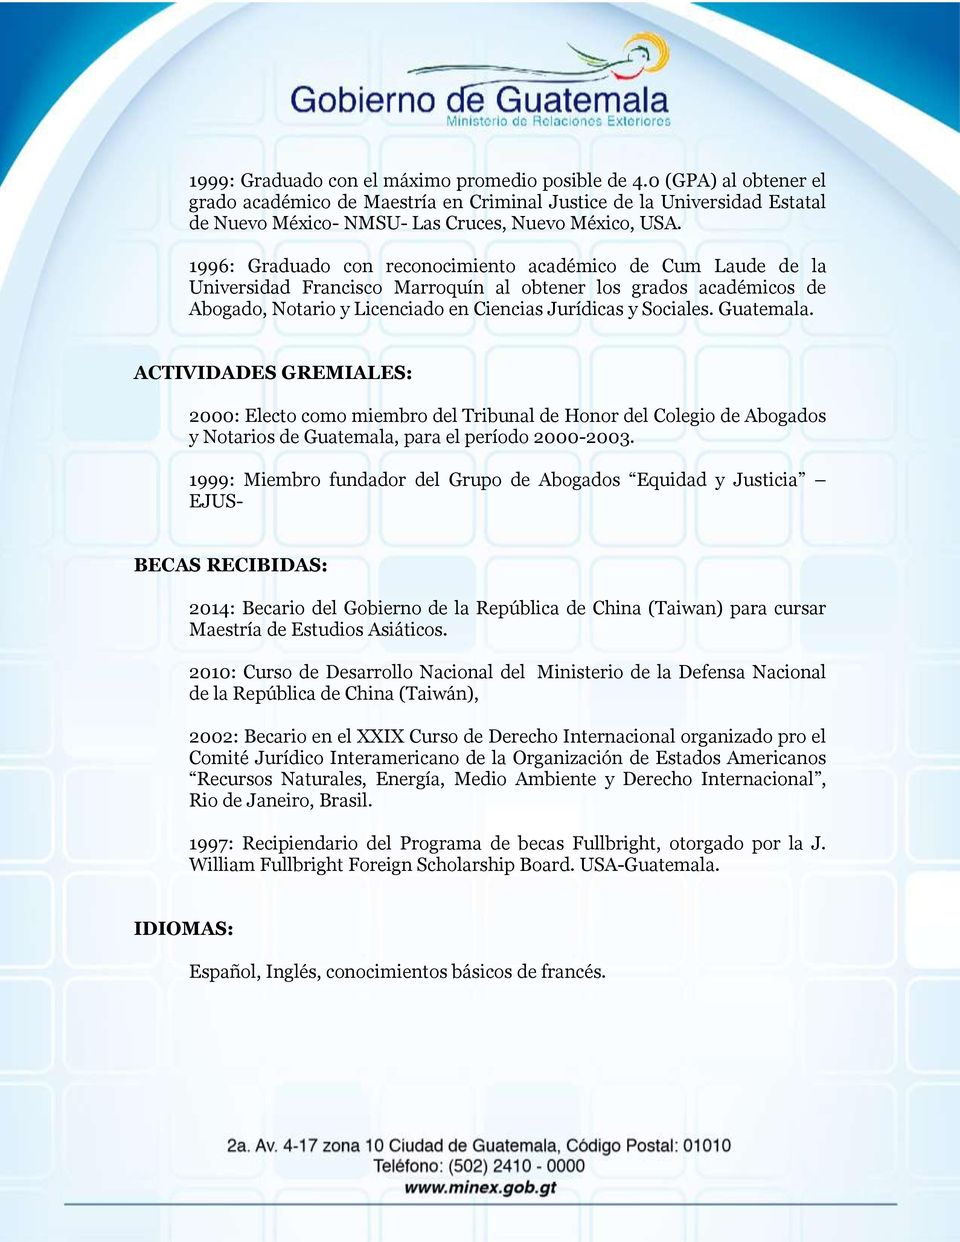 Guatemala. ACTIVIDADES GREMIALES: 2000: Electo como miembro del Tribunal de Honor del Colegio de Abogados y Notarios de Guatemala, para el período 2000-2003.